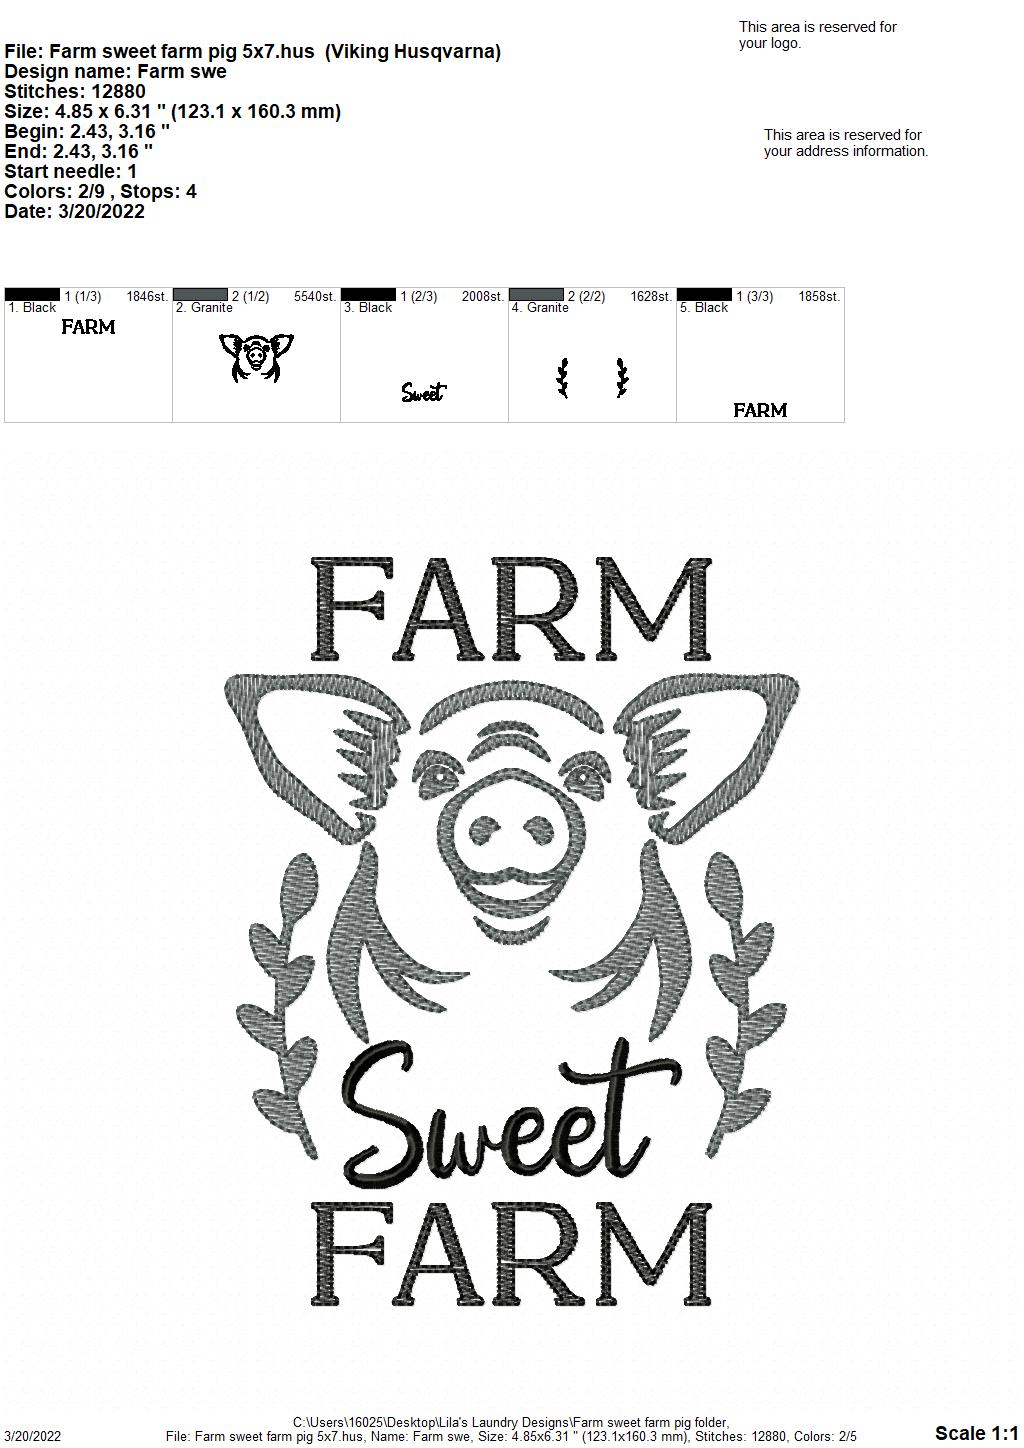 Farm Sweet Farm Pig - 3 sizes- Digital Embroidery Design